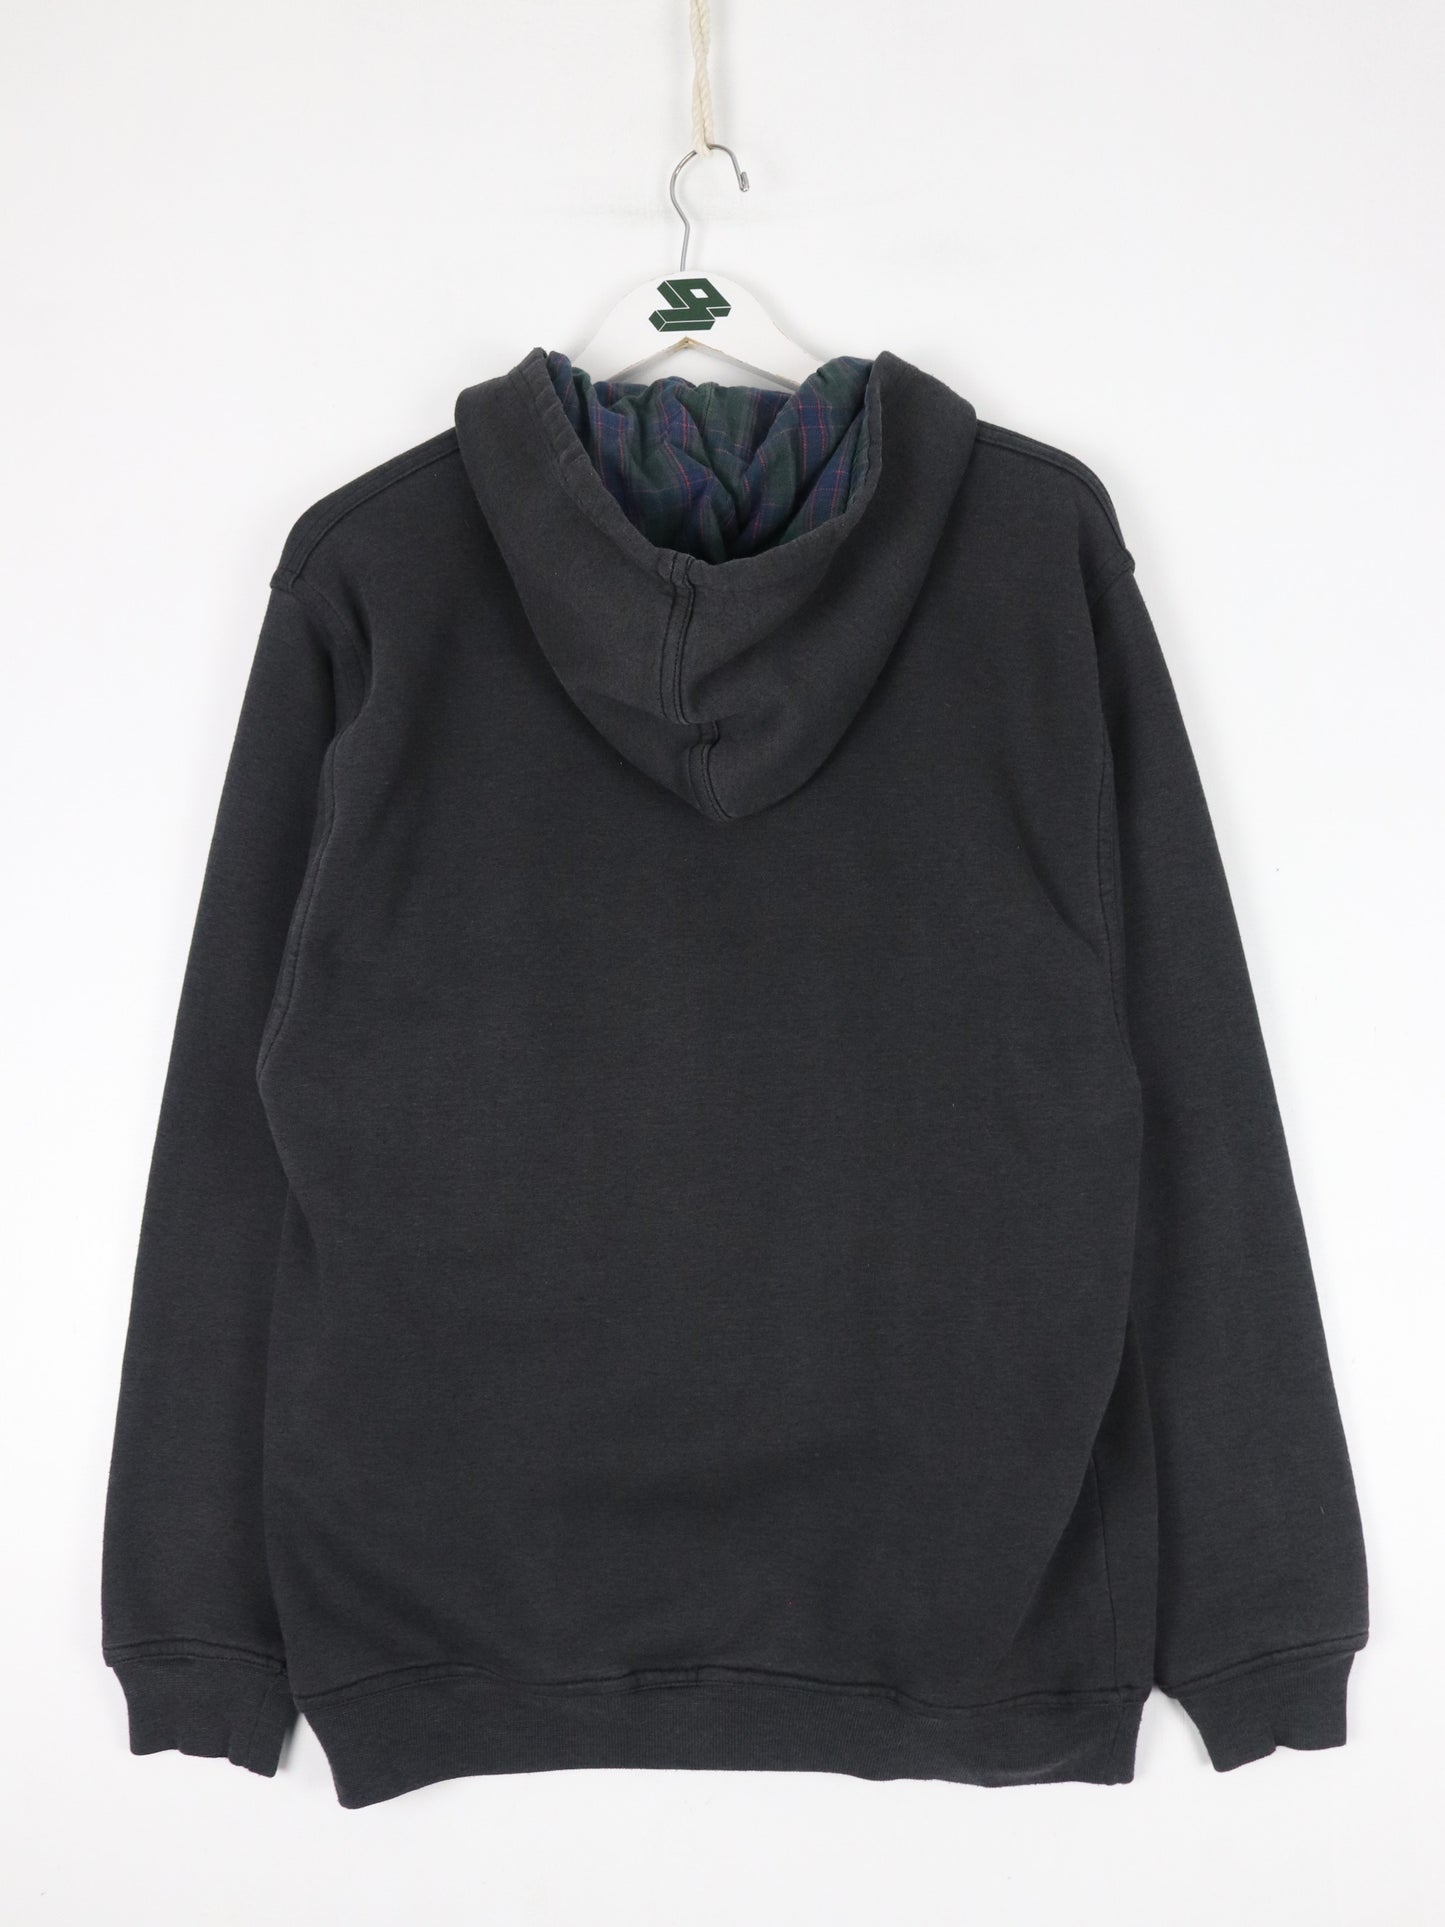 Vintage York Sweatshirt Mens Medium Black Quarter Zip Hoodie